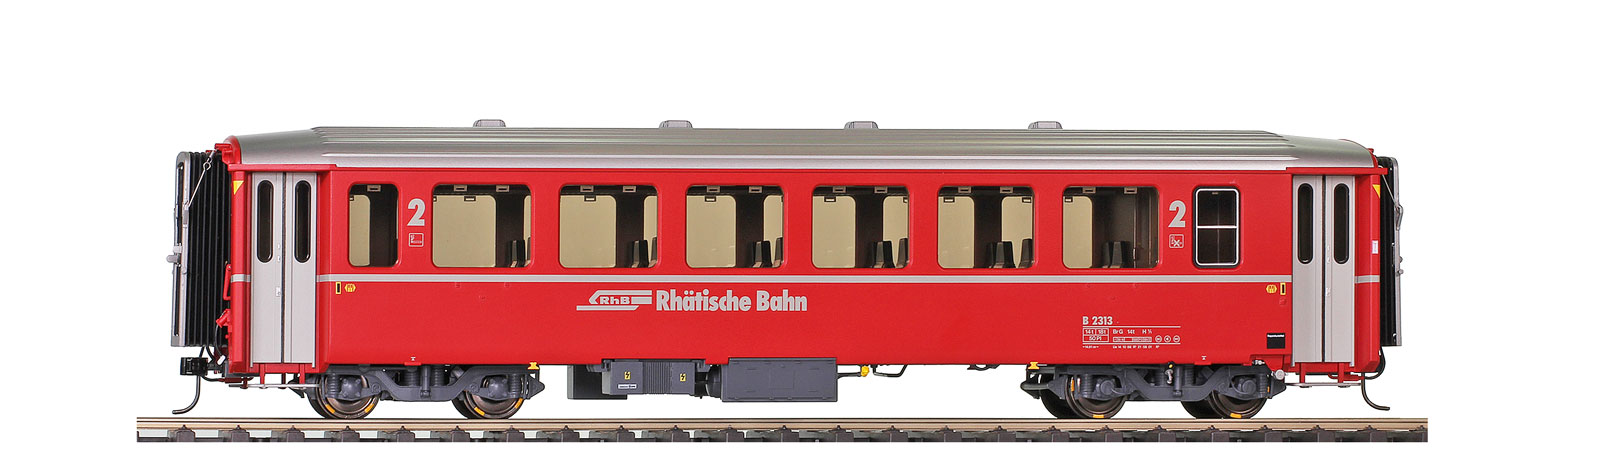 0m RhB B 2459 EWI refit Logo roter 2. Klasse Personenwagen verkürzt für Bernina-Bahn